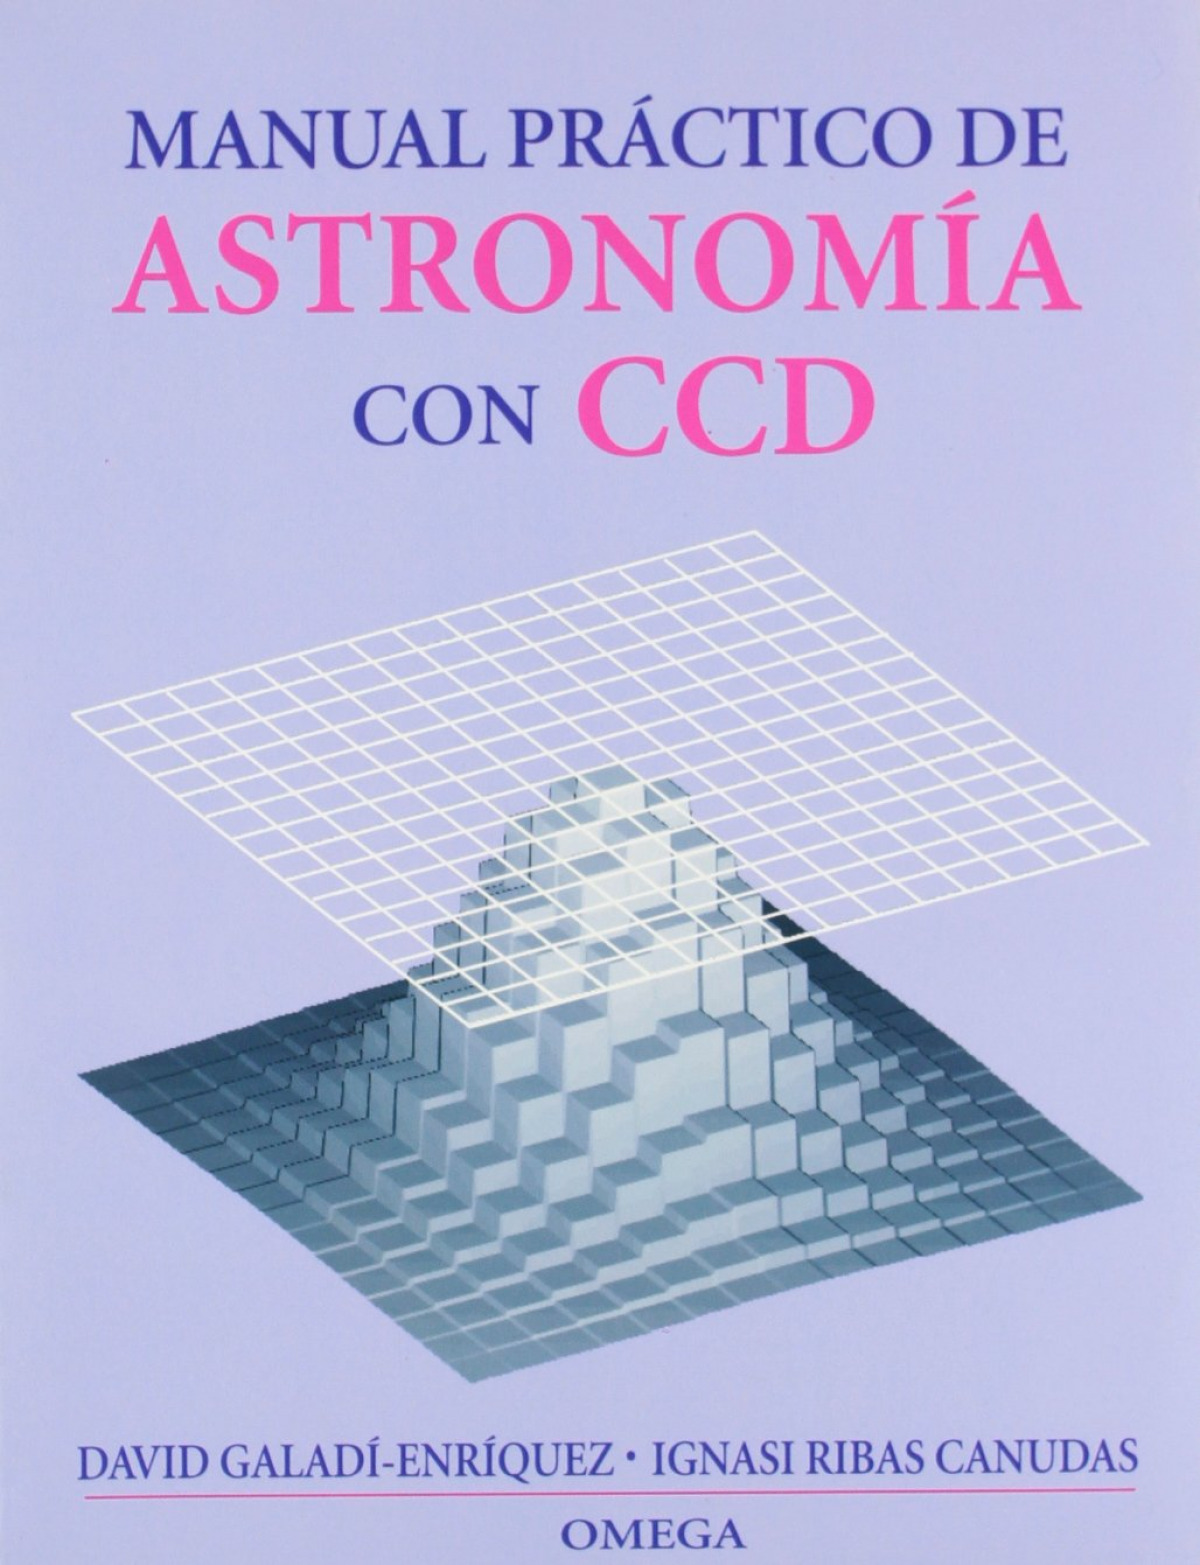 Manual practico de astronomia con ccd - Galadi, D. Y Ribas, I.